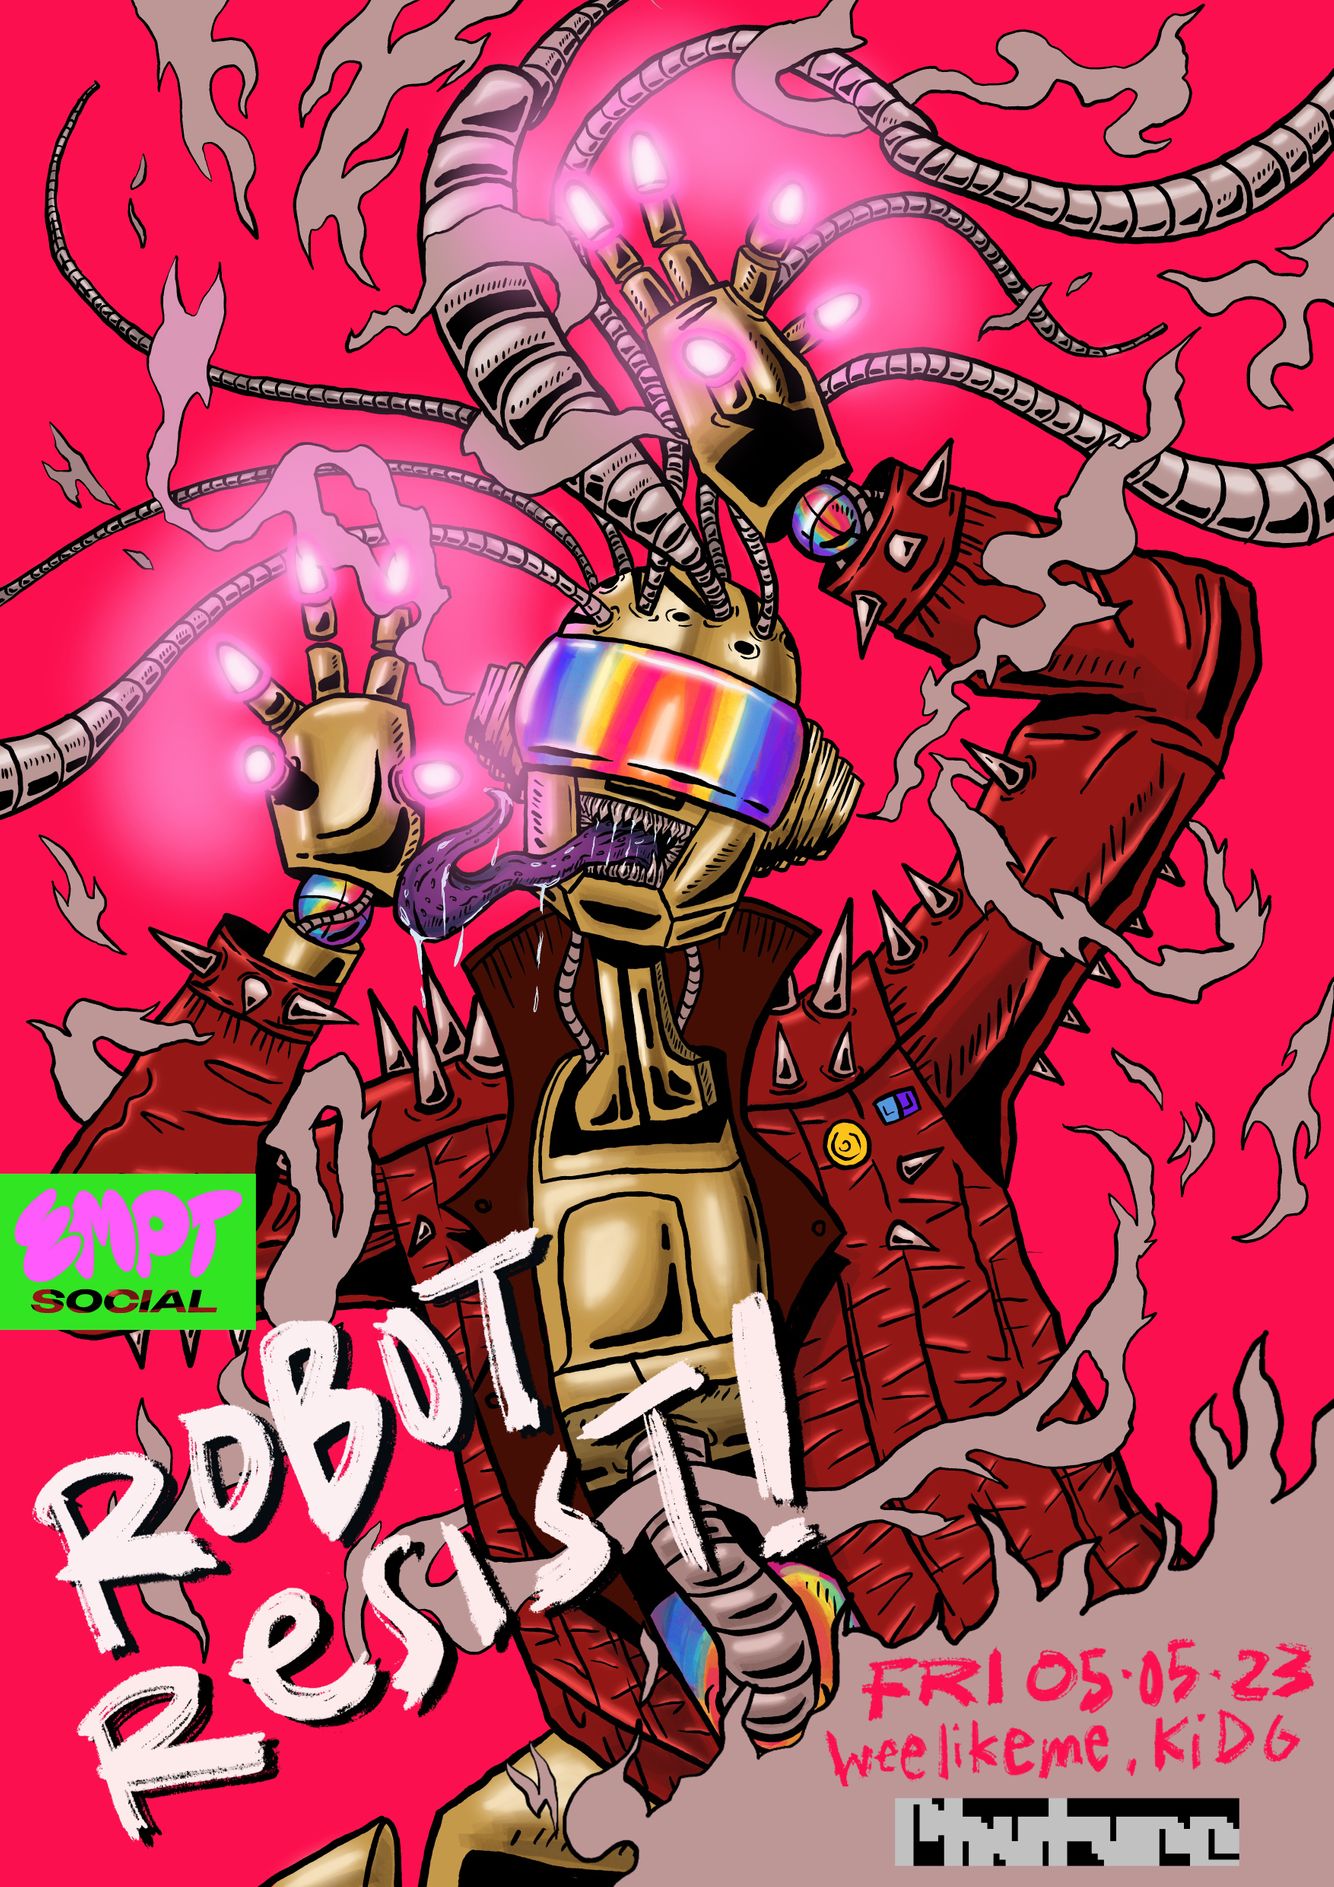 EMPT Social: Robot Resist 